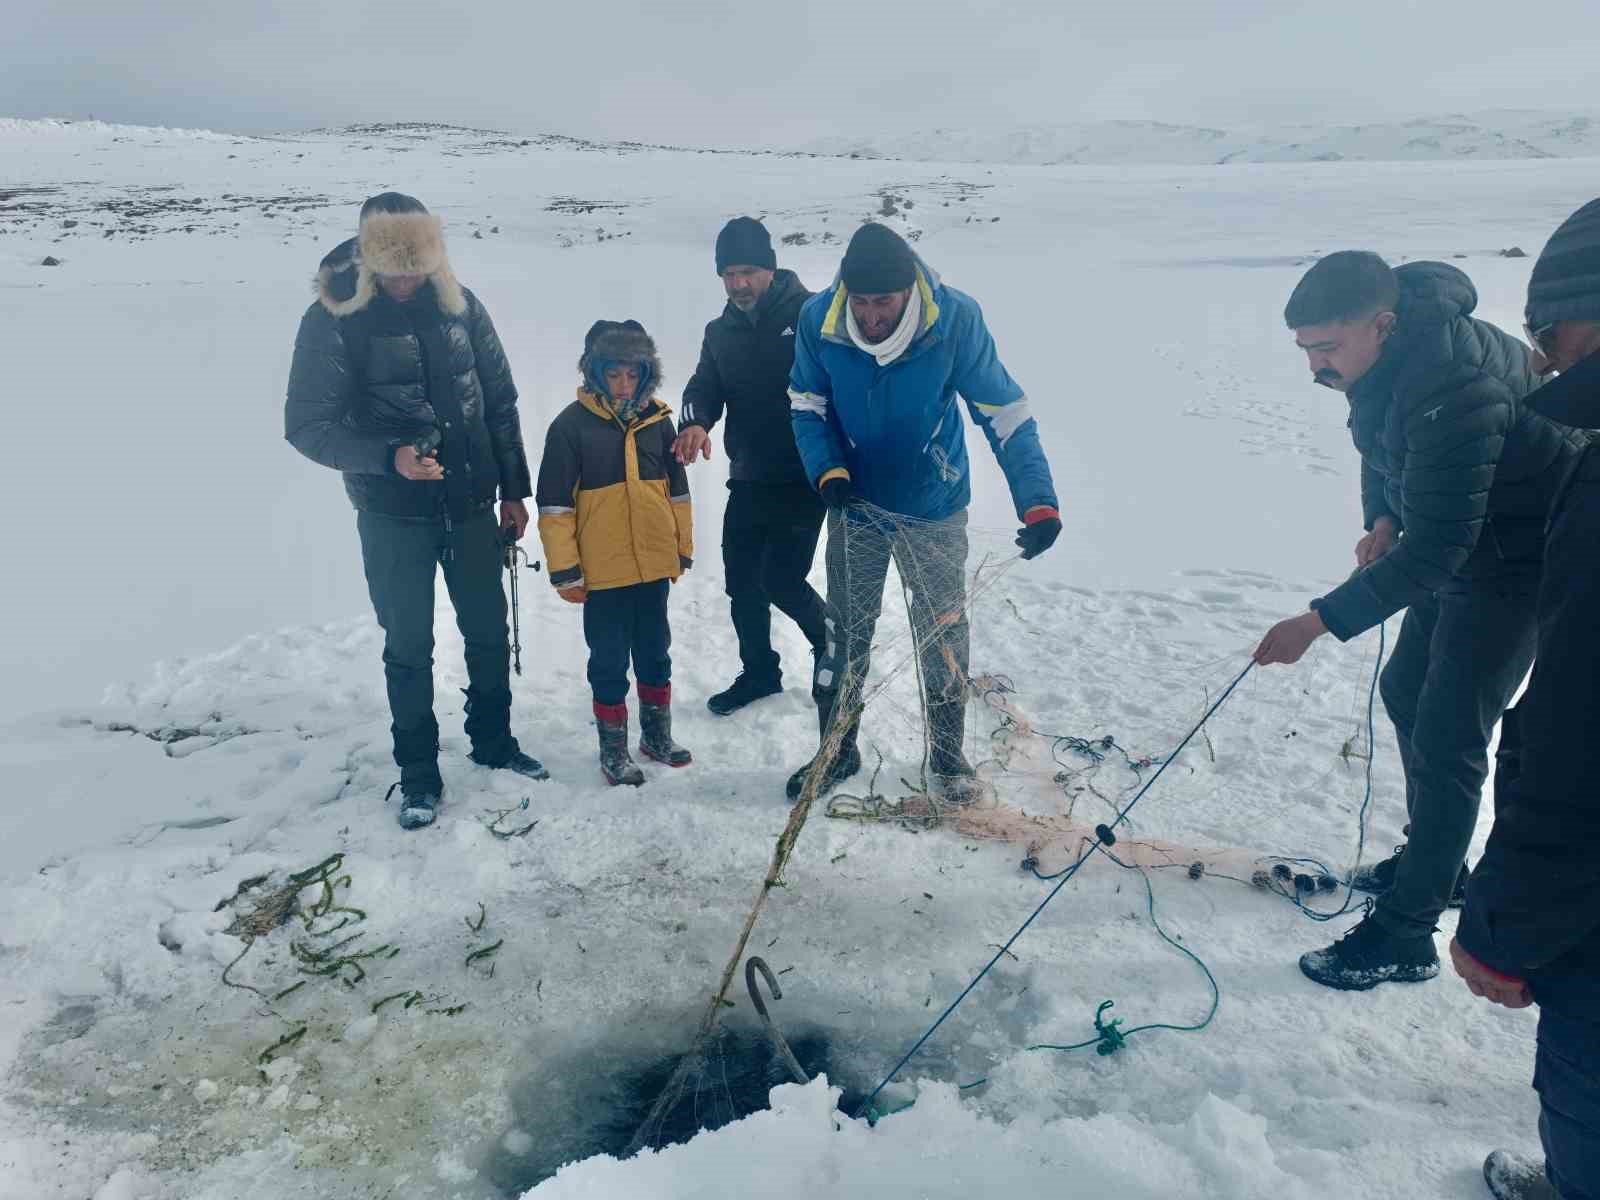 Yüzeyi buz tutan Balık Gölü’nde, buzu kırıp balık tuttular